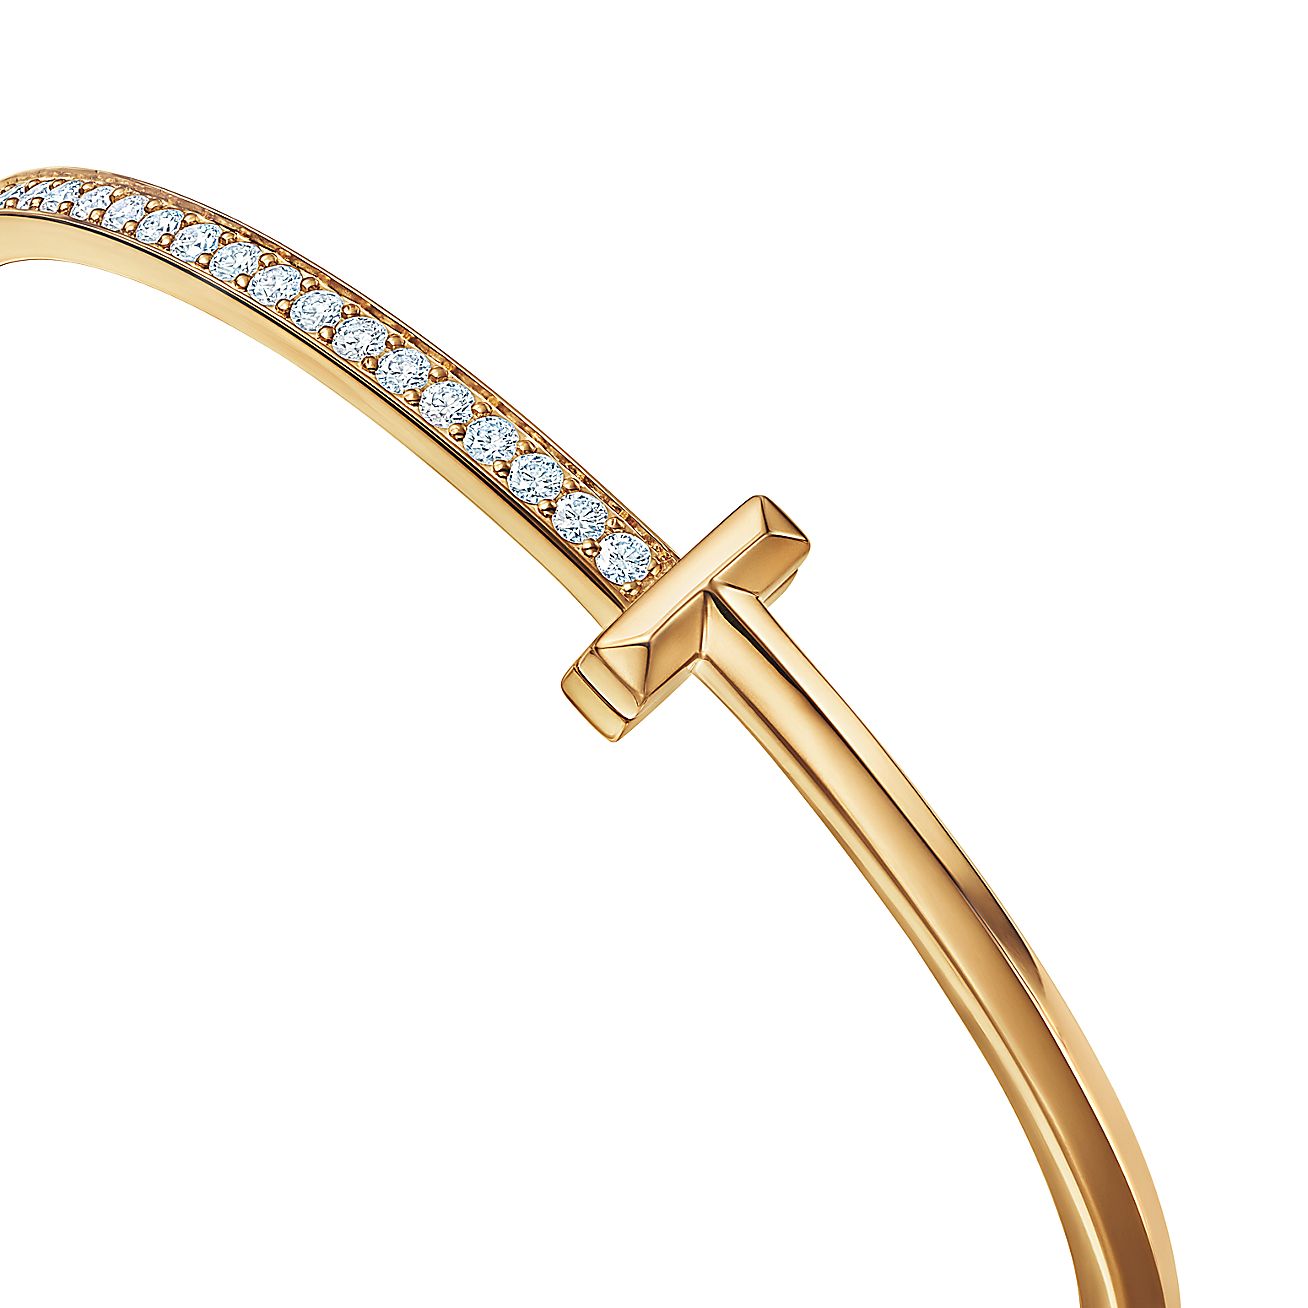 Tiffany T T1 Hinged Bangle Bracelet in White Gold, Narrow, Size: Large